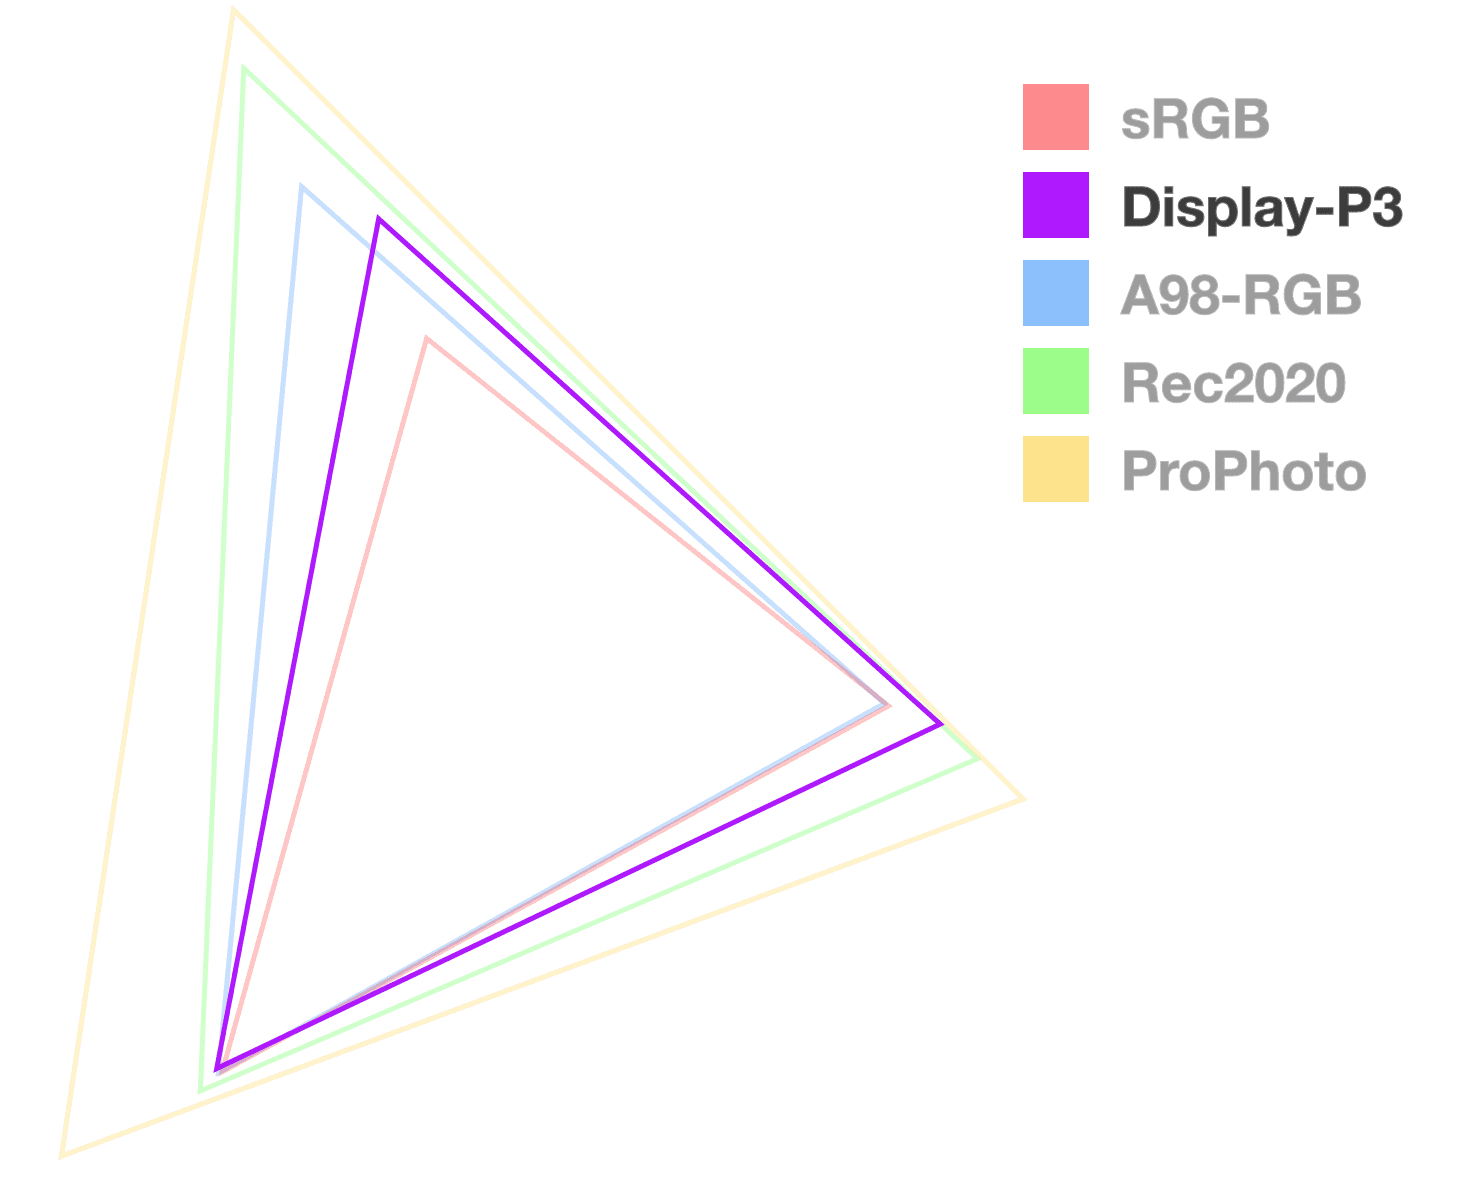 Le triangle d&#39;affichage P3 est le seul qui soit entièrement opaque, ce qui permet de visualiser la taille de la gamme. Il ressemble à la 2e à partir de la plus petite.